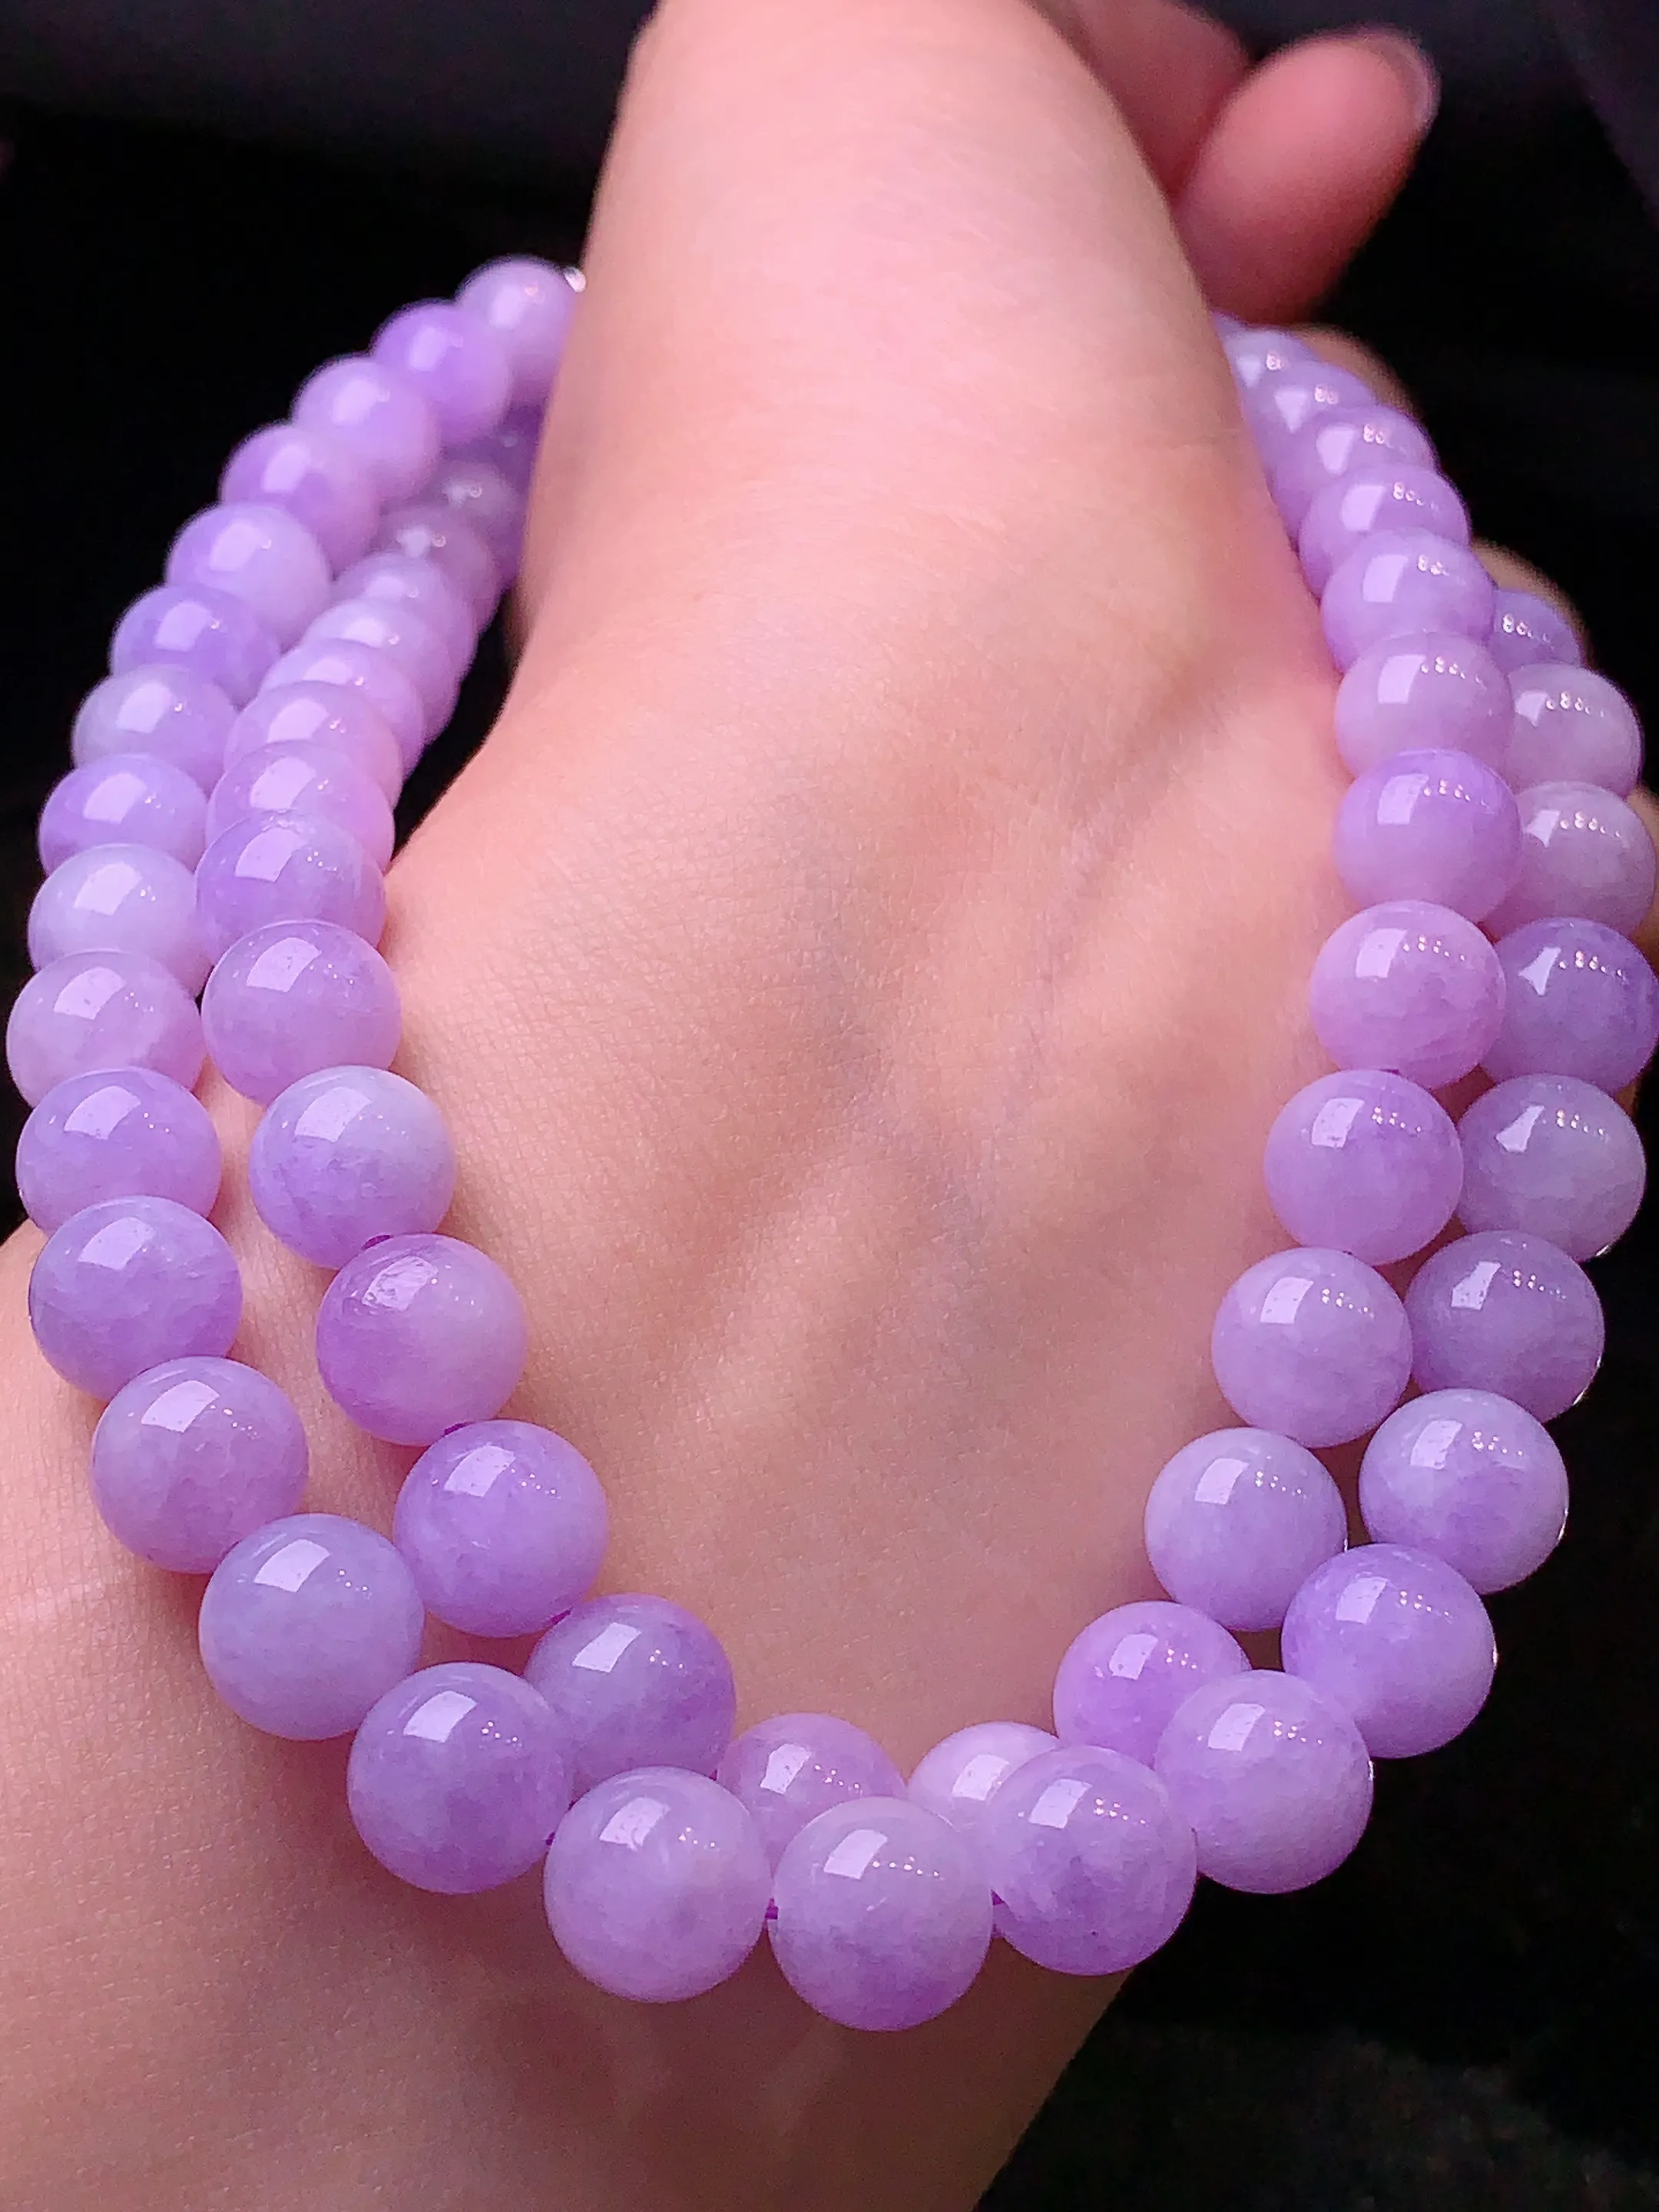 紫罗兰圆珠项链 玉质细腻   色泽艳丽 圆润饱满 款式新颖时尚精美 取一尺寸8.3